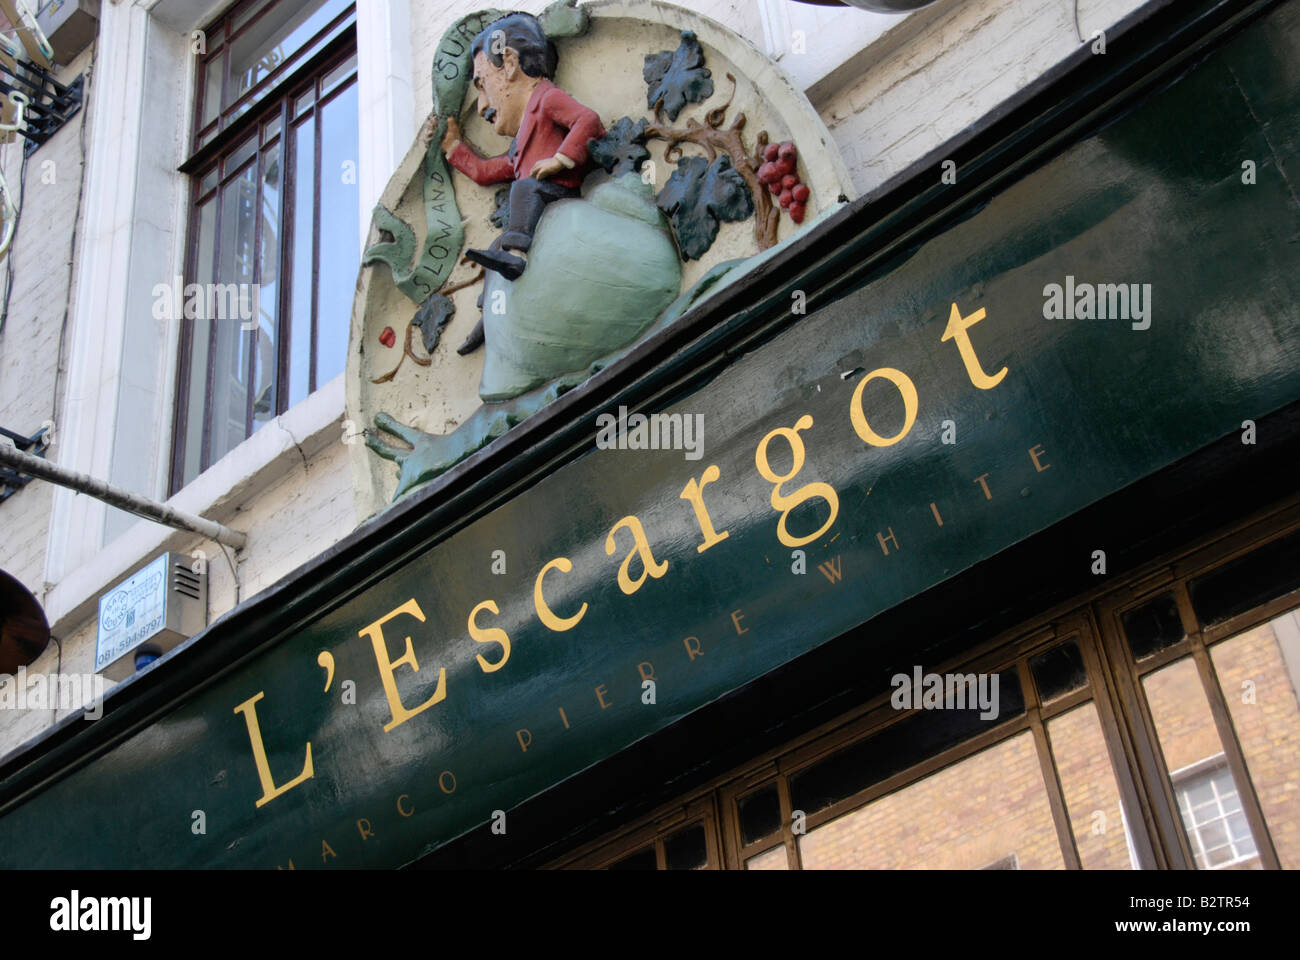 L Escargot Marco Pierre White Michelin Star restaurant in Greek Street Soho London Stock Photo